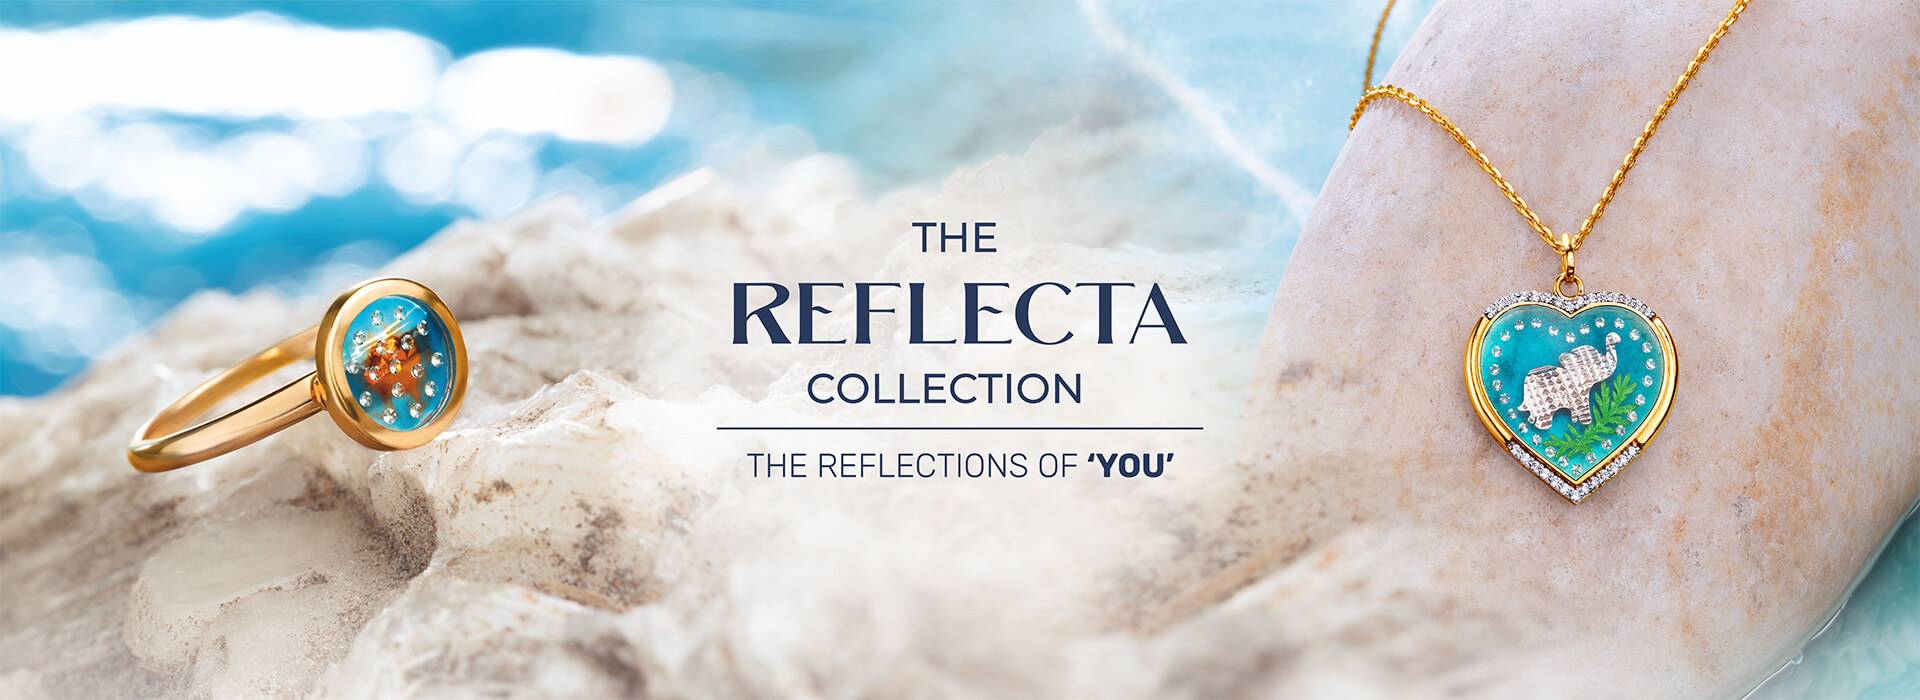 Reflecta Collection